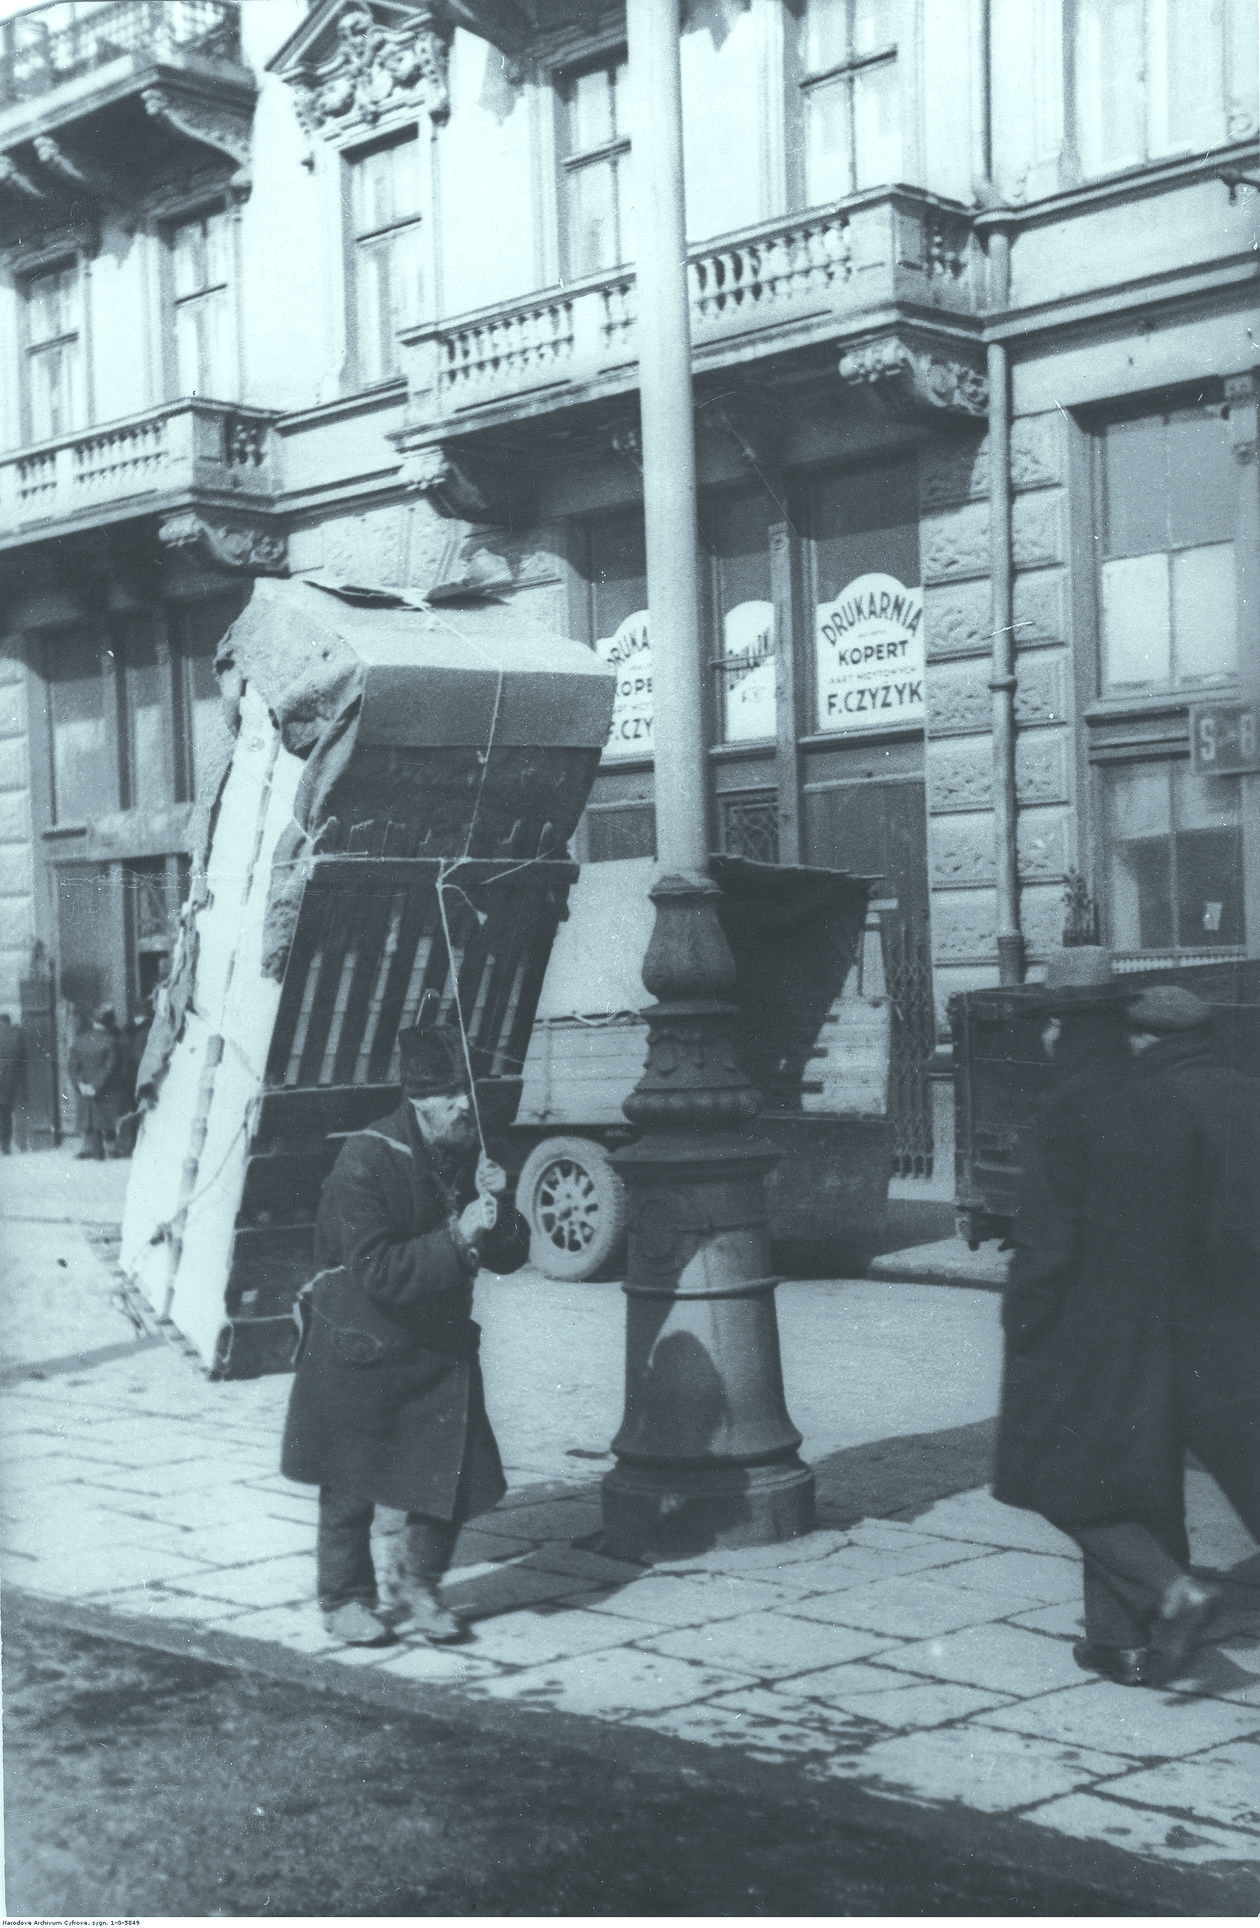  <p>Żydowski tragarz na warszawskiej, przedwojennej ulicy. Identycznie wyglądali w&oacute;wczas lubelscy</p>
<p>&nbsp;</p>